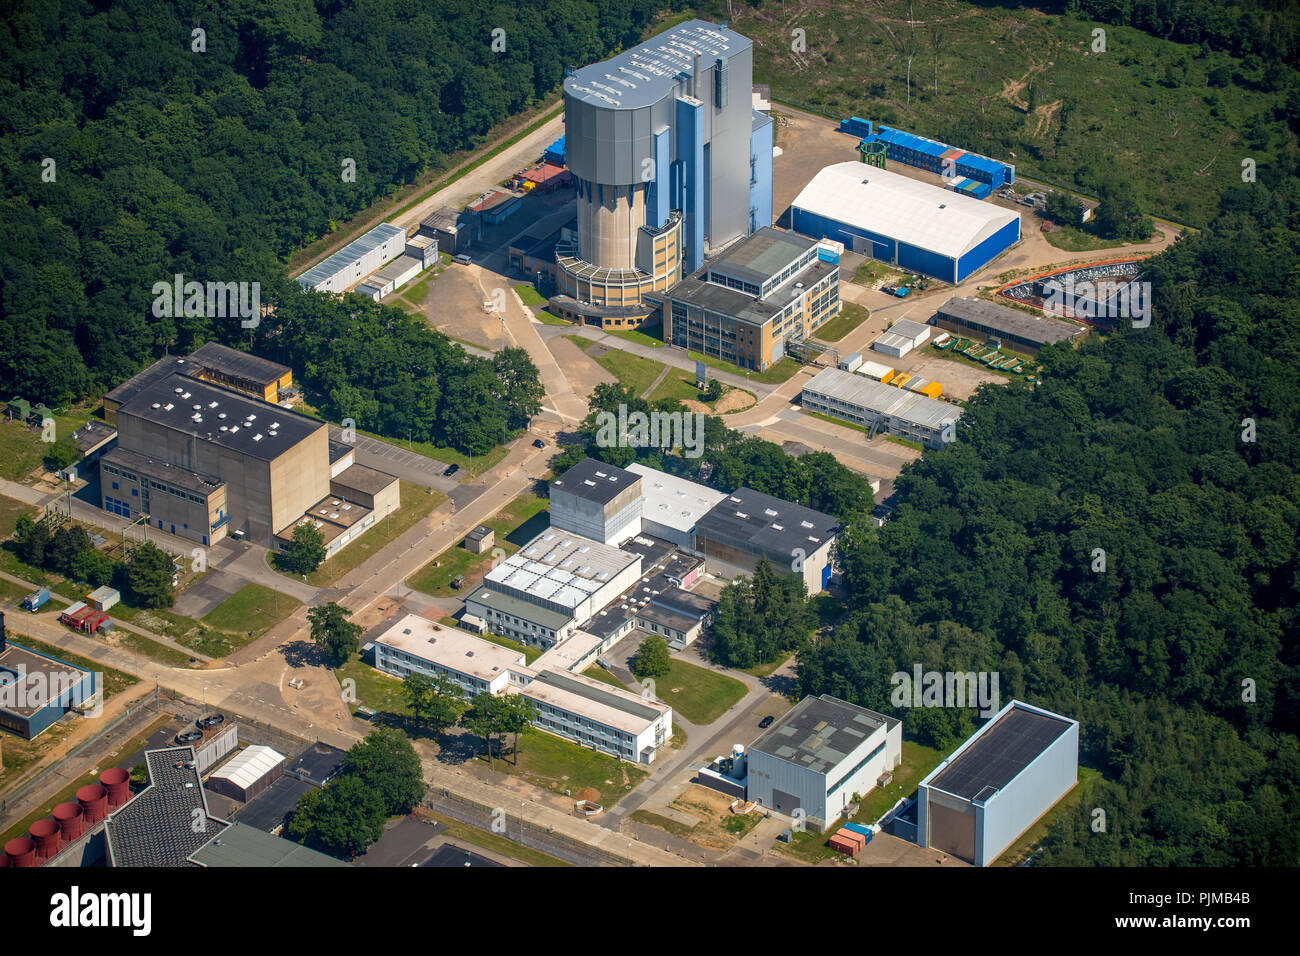 Centro de Investigación de Jülich, apagar el reactor de alta temperatura AVR Jülich, Jülich, zona carbonífera del Bajo Rin, Renania del Norte-Westfalia, Alemania Foto de stock